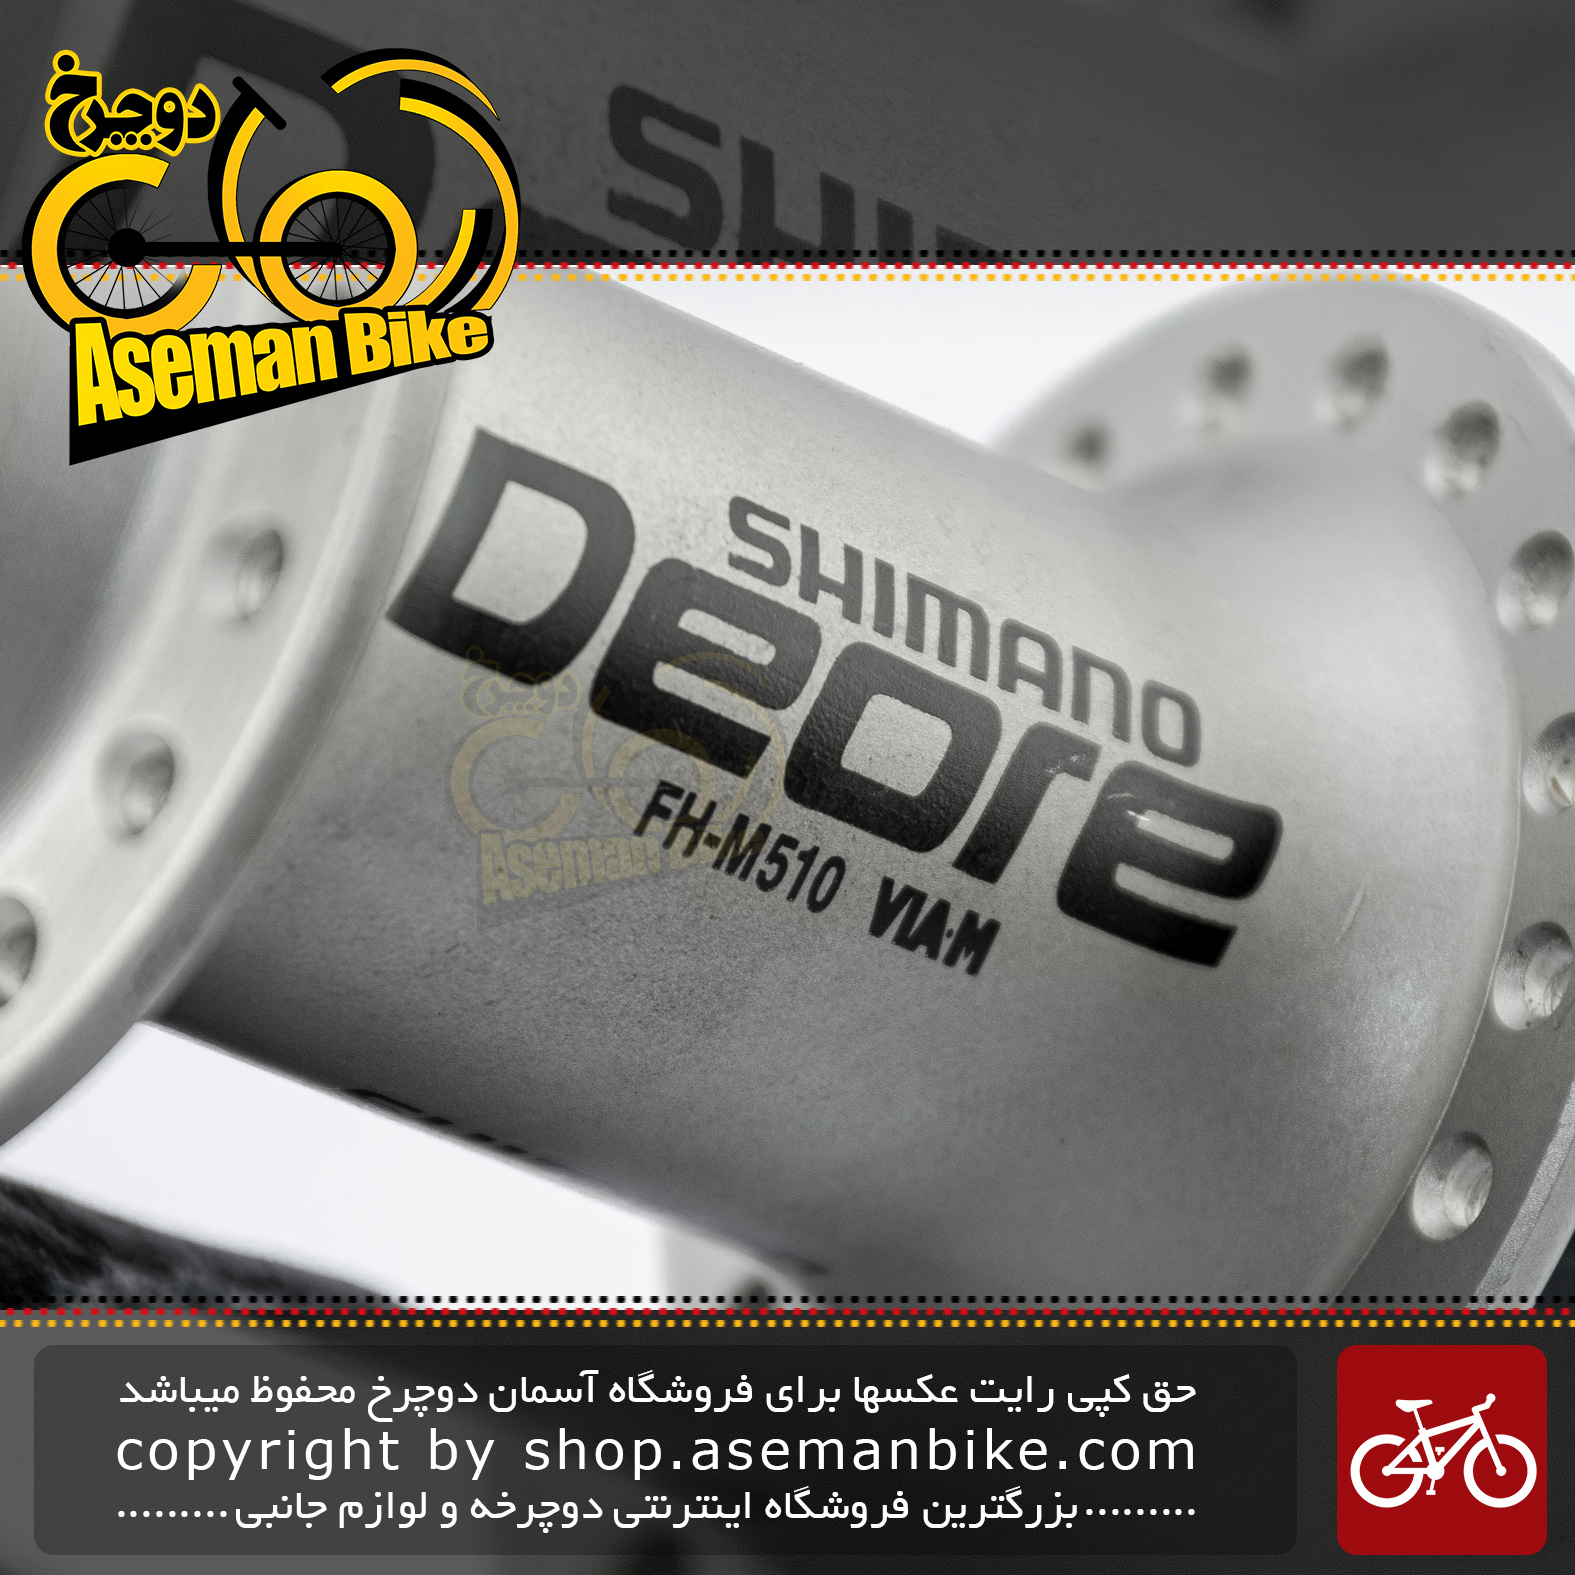 ست توپی تنه عقب و جلو دوچرخه شیمانو سری دئور اکس تی مدل ام 750 ساخت مالزی Shimano Bicycle hub set Deore XT M750 Malaysia